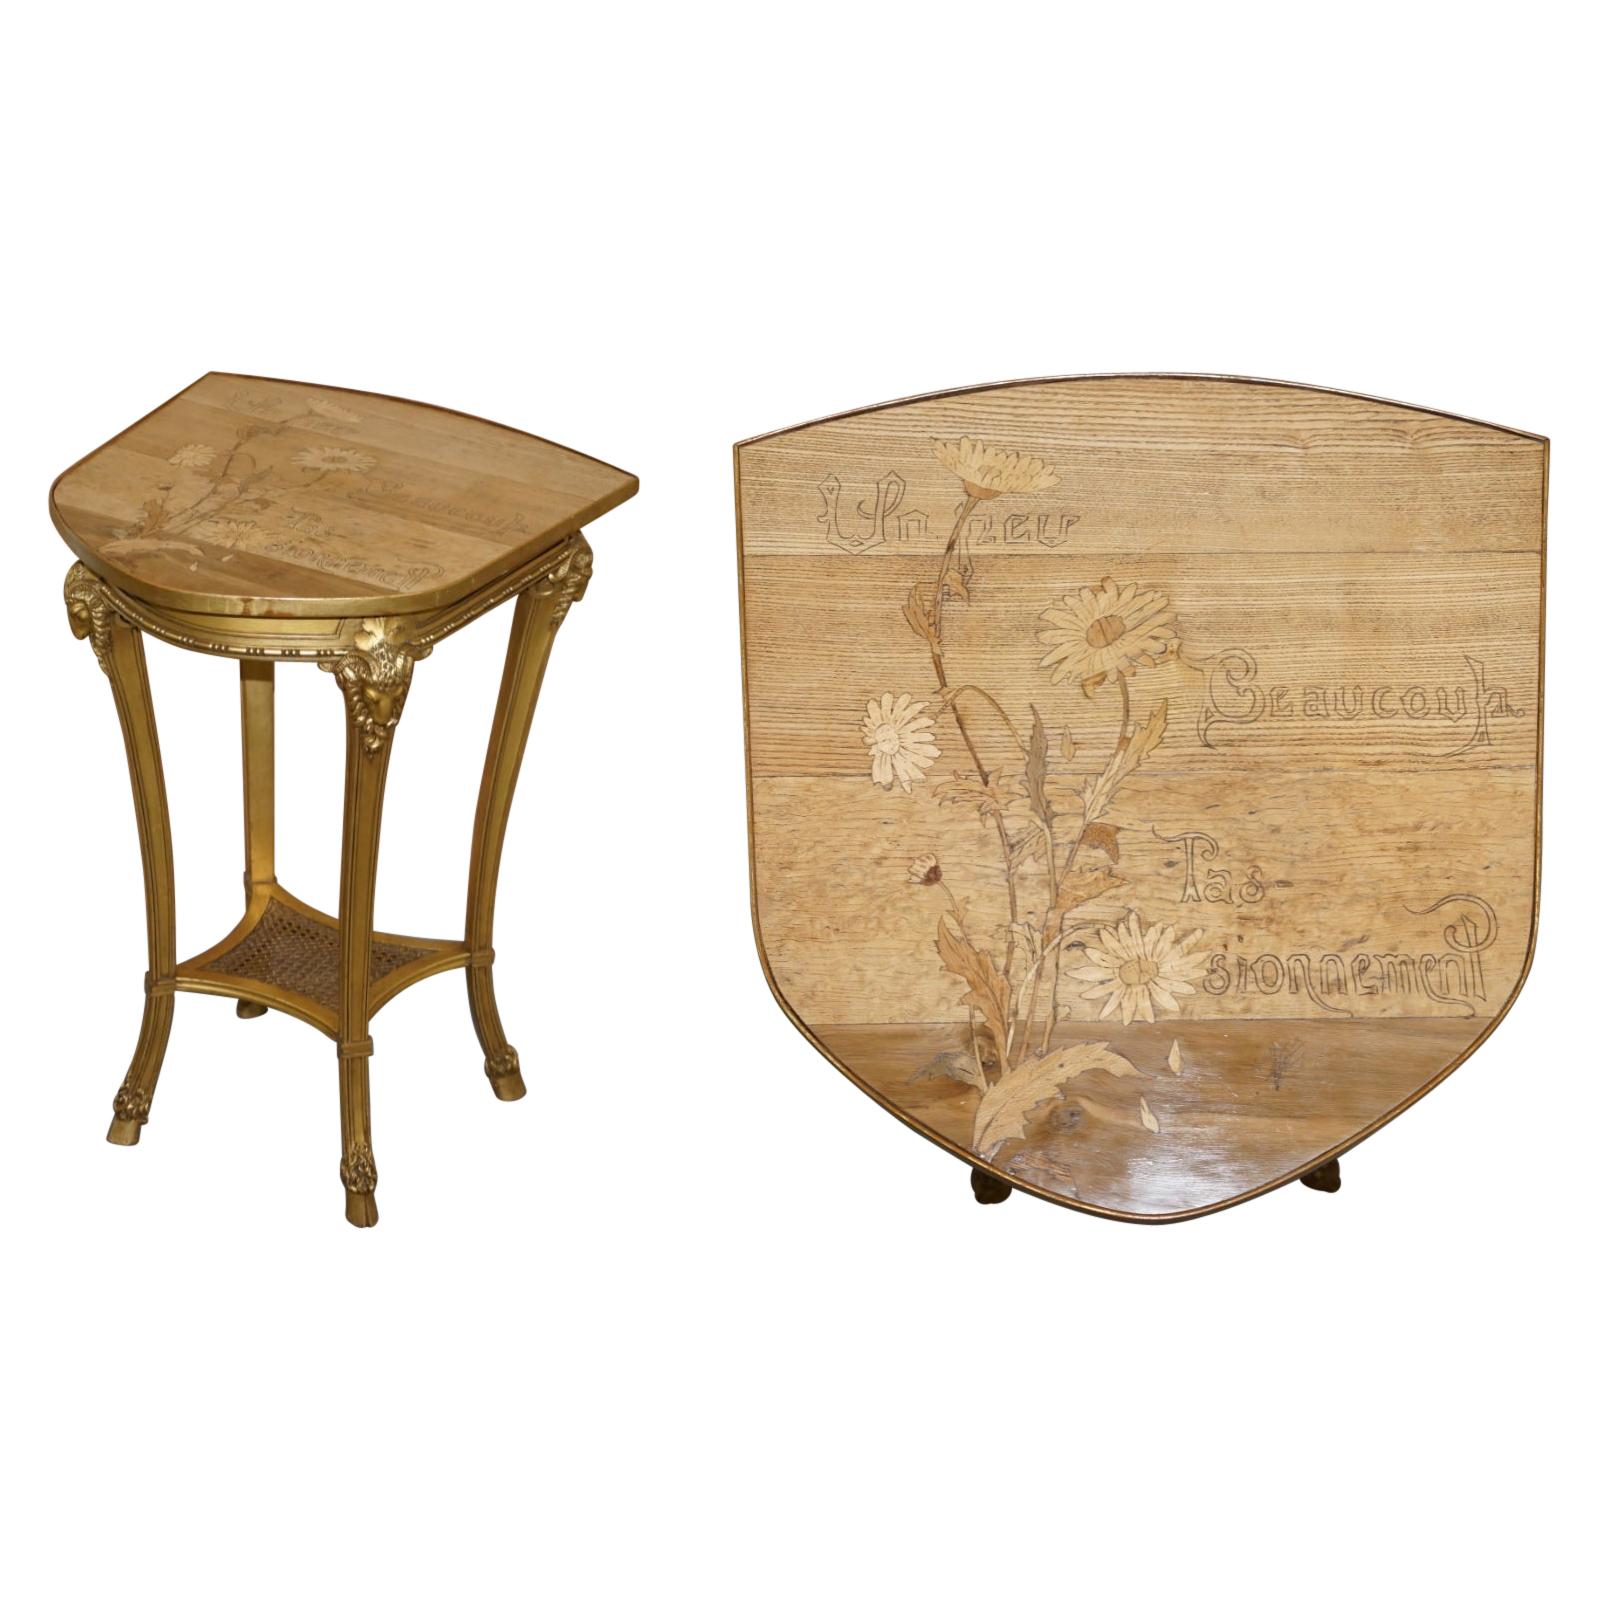 Very Rare Emile Galle Romantic Specimen Wood Table Un Peu Beaucoup Passionnement